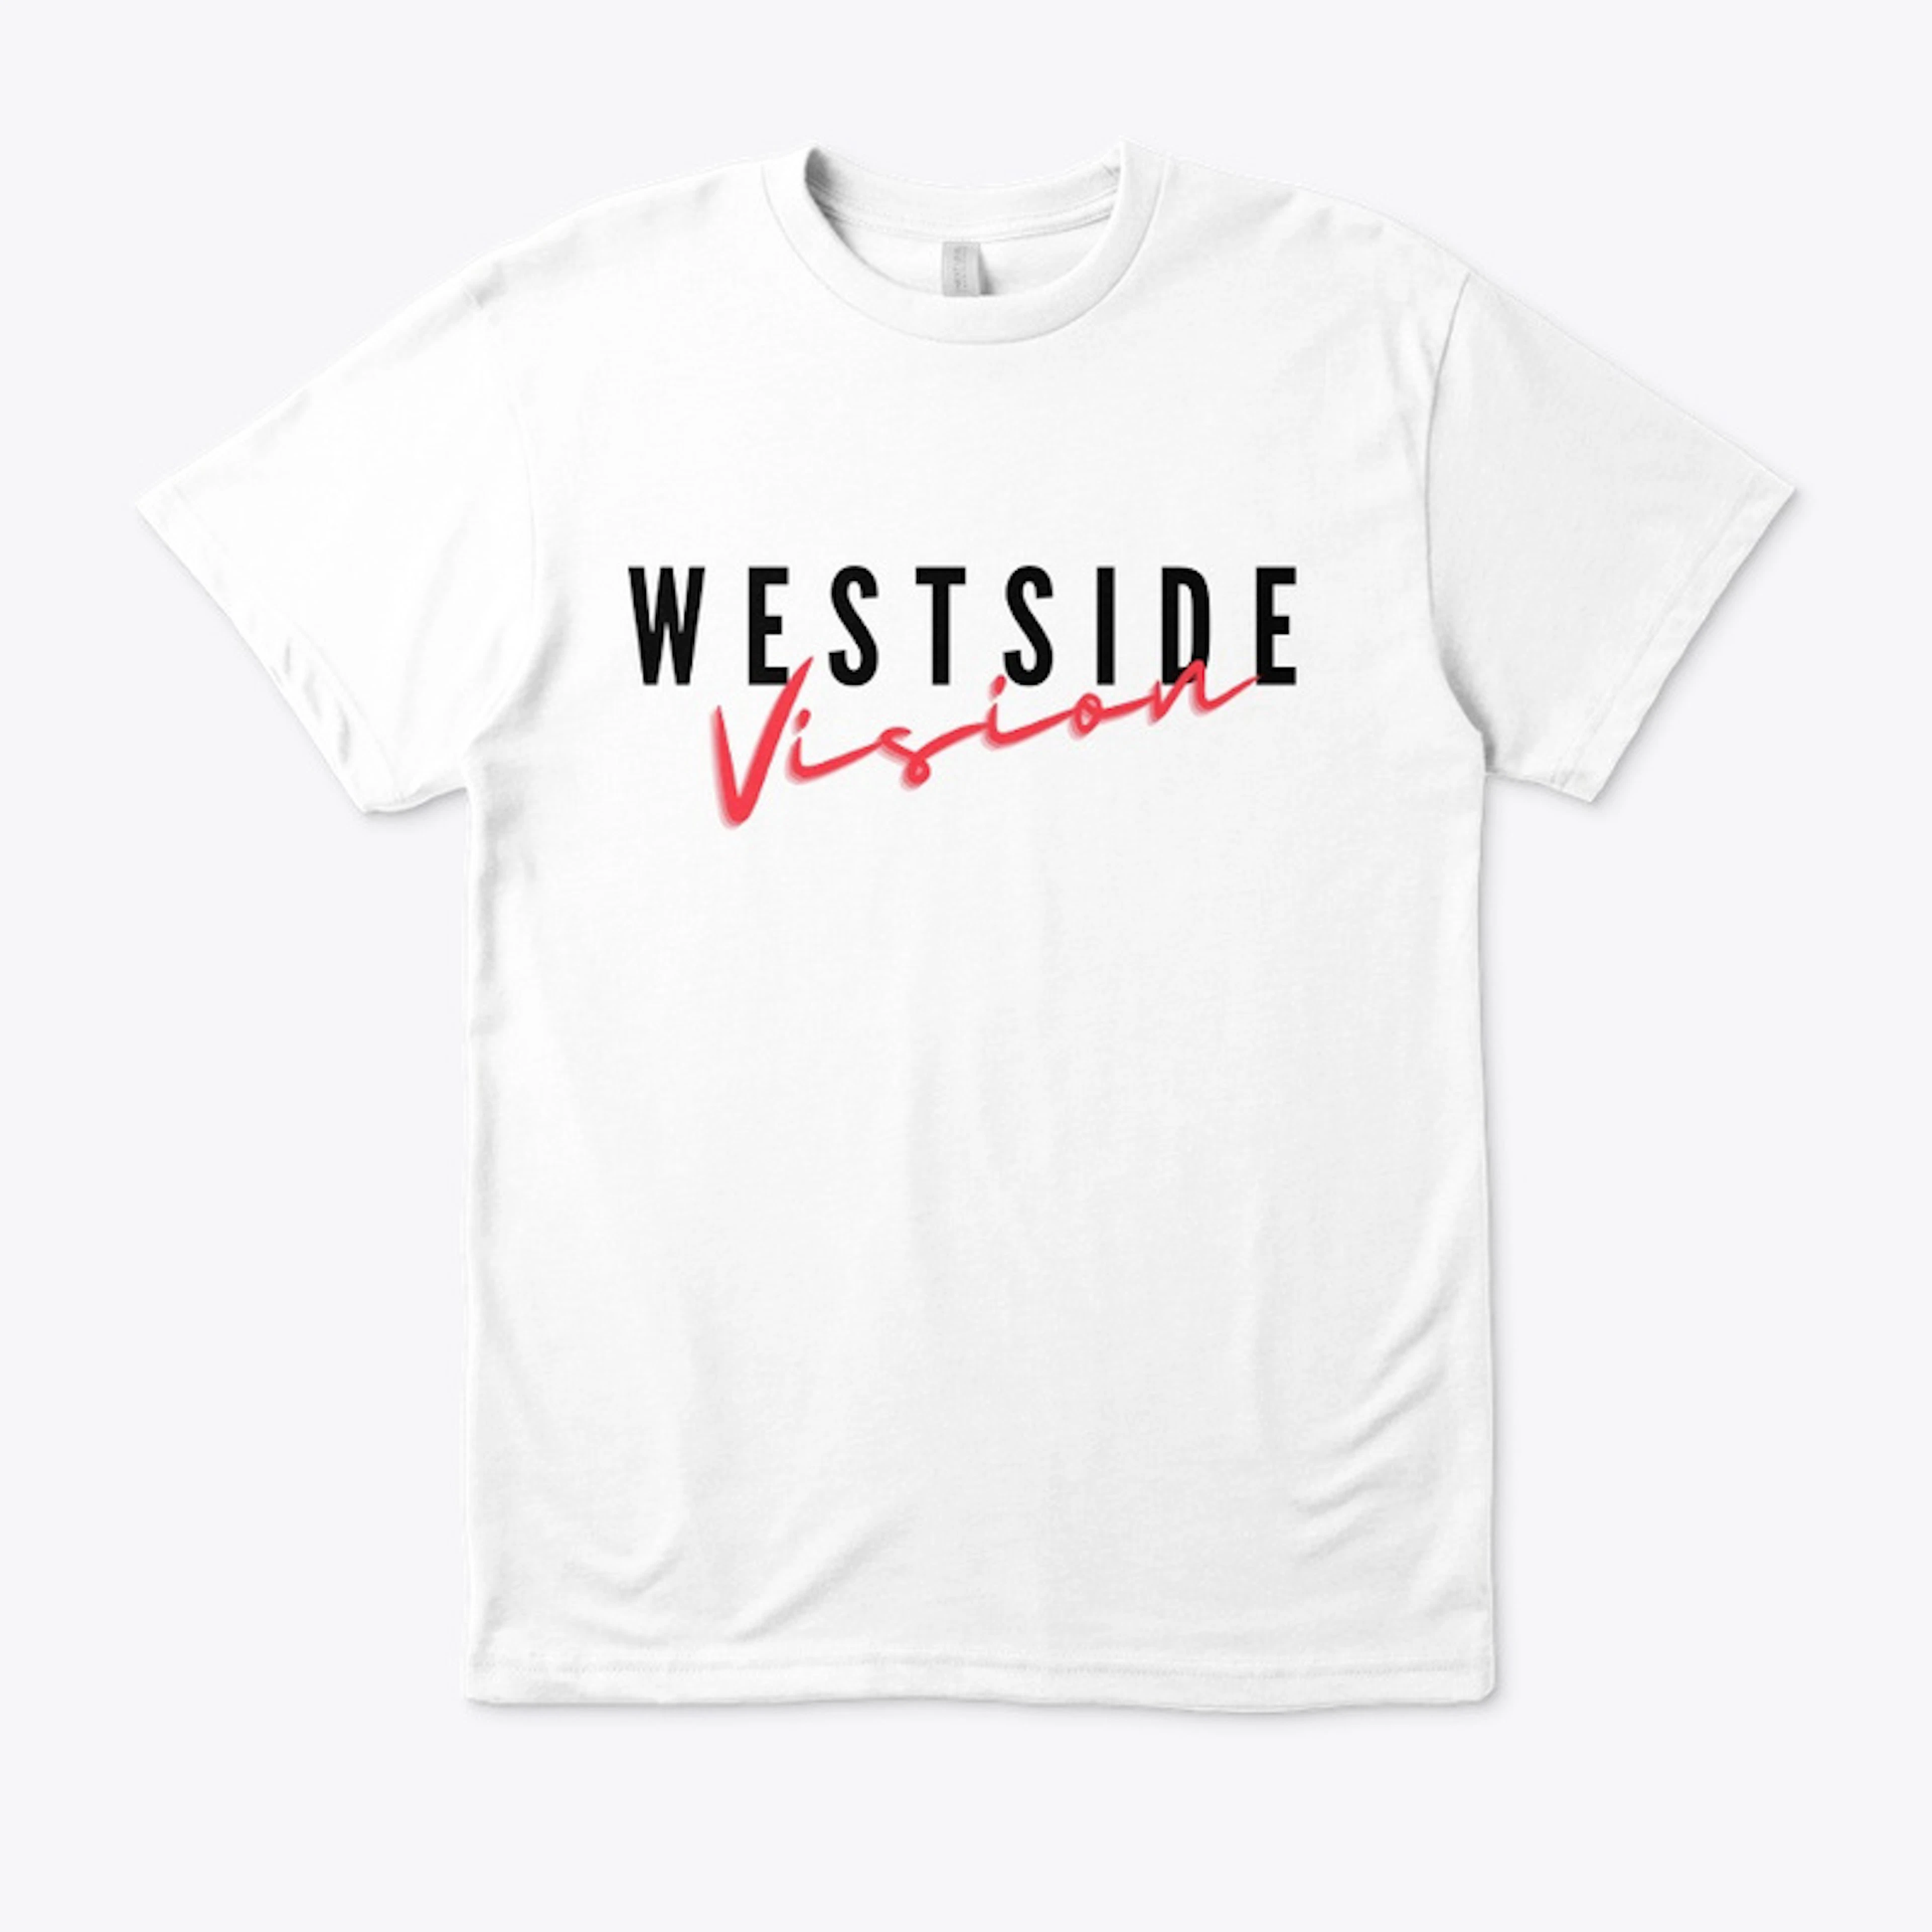 Westside Vision